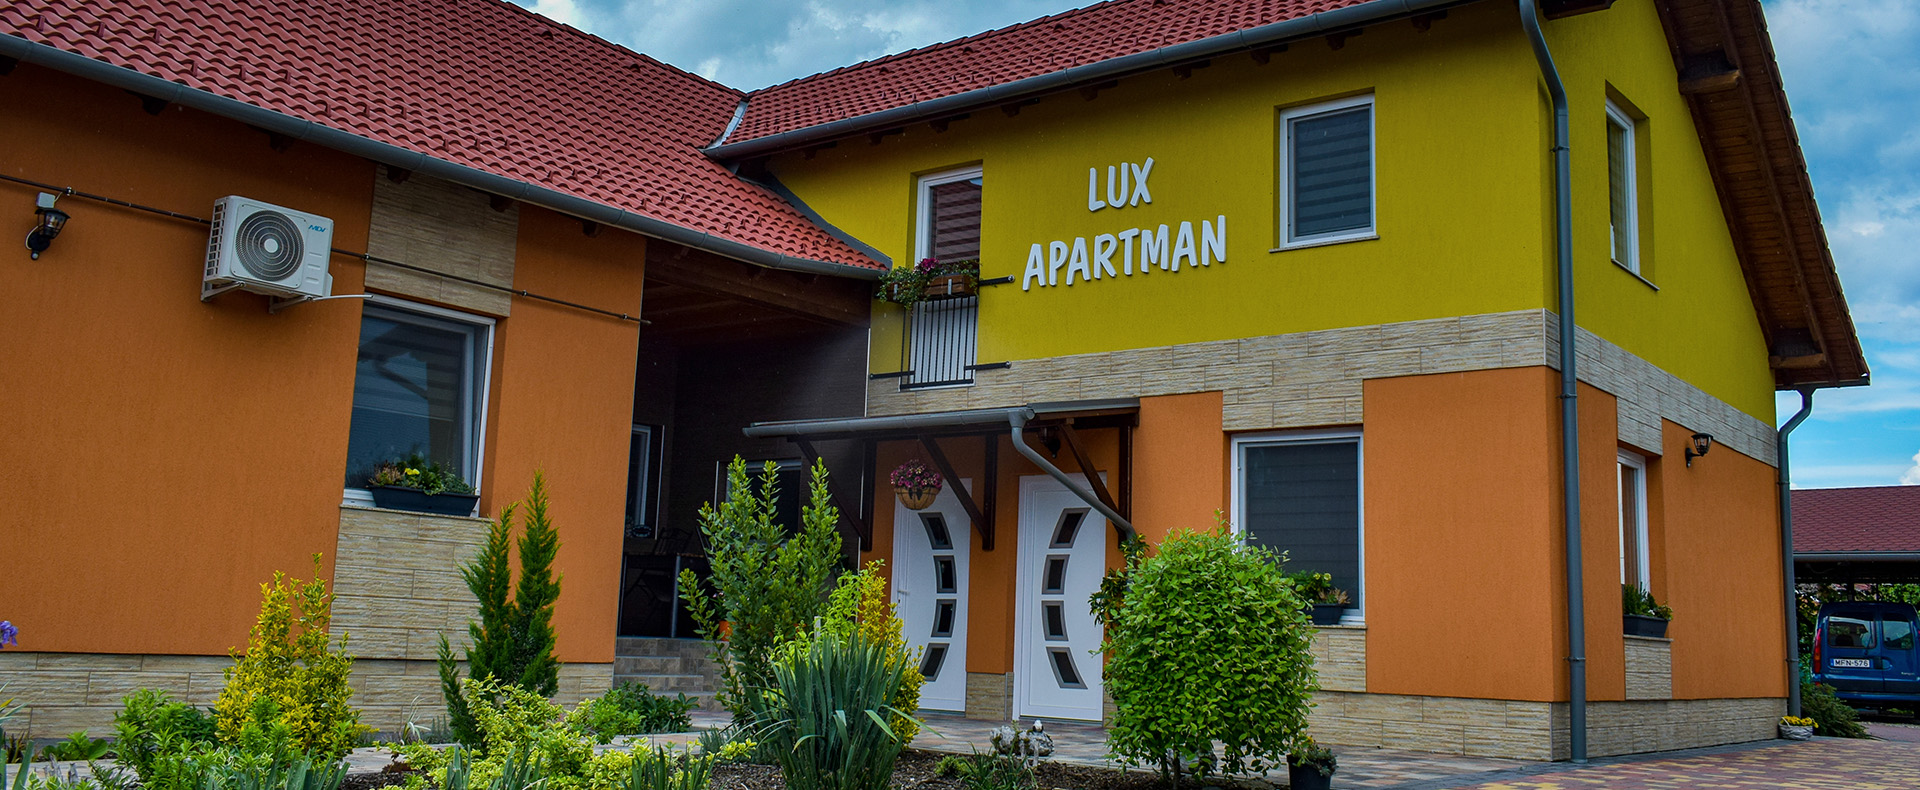 Lux Apartman szállás Szeged-Maroslele